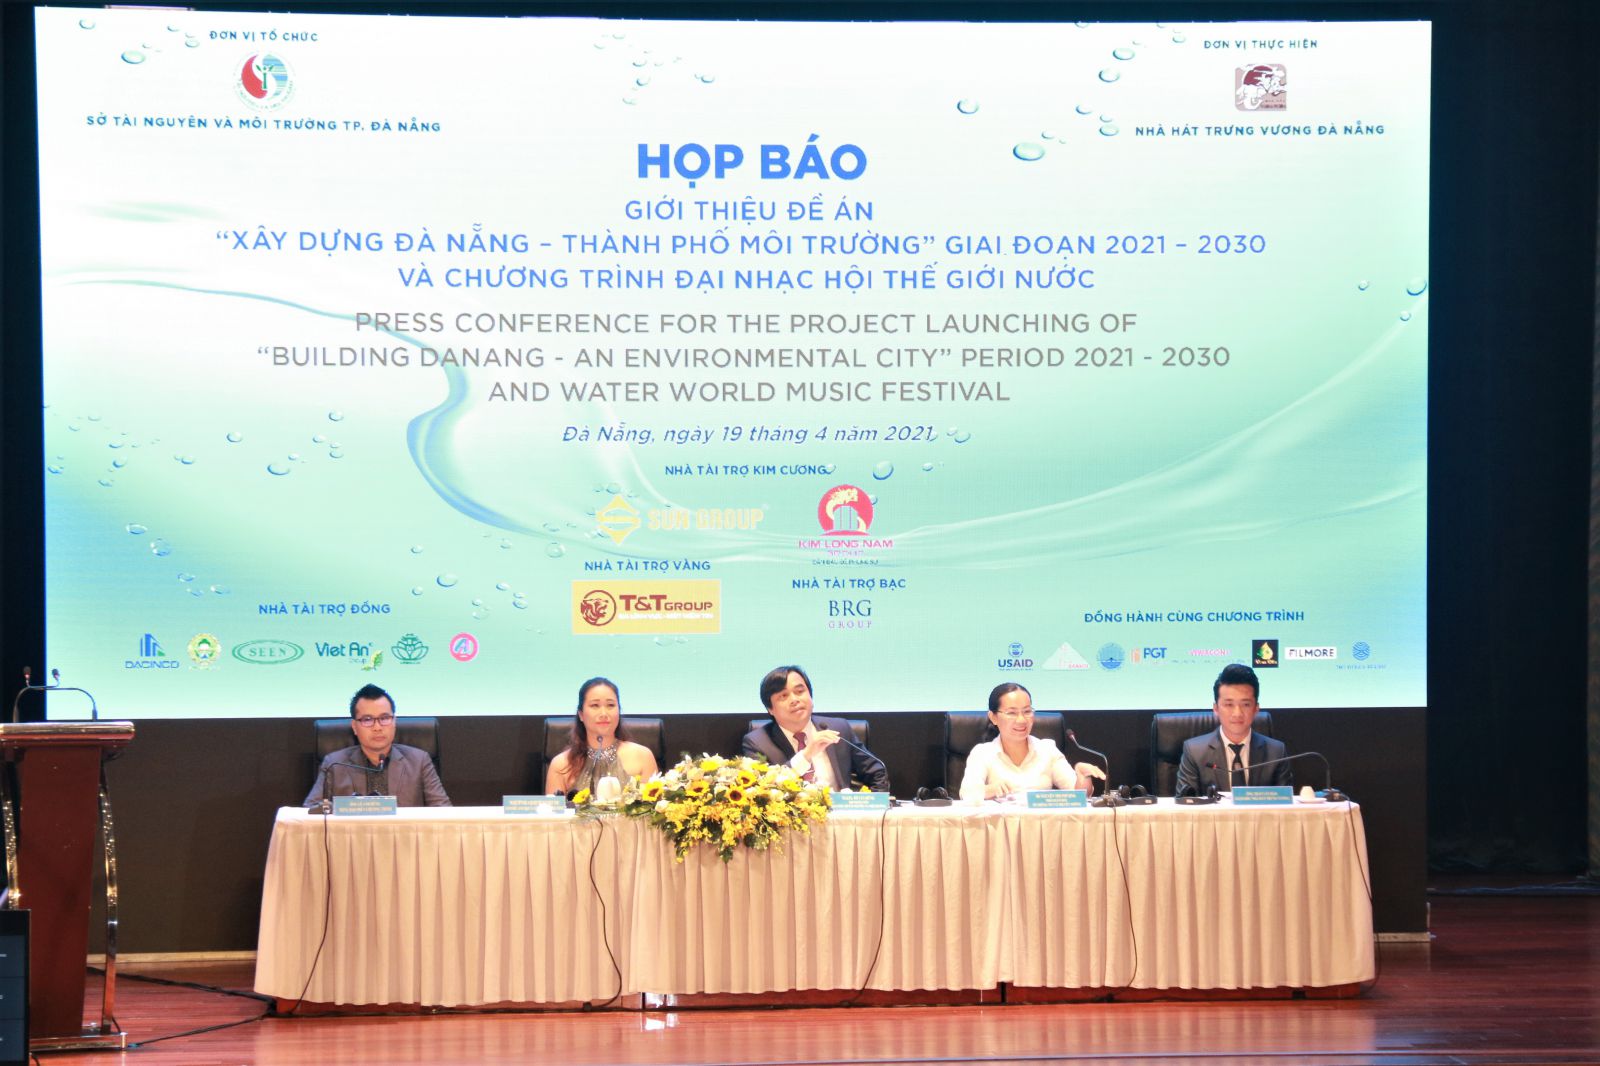 họp báo giới thiệu đề án “Xây dựng Đà Nẵng – Thành phố môi trường” giai đoạn 2021 – 2030 và chương trình Đại nhạc hội “Thế giới nước” tại TP. Đà Nẵng. 